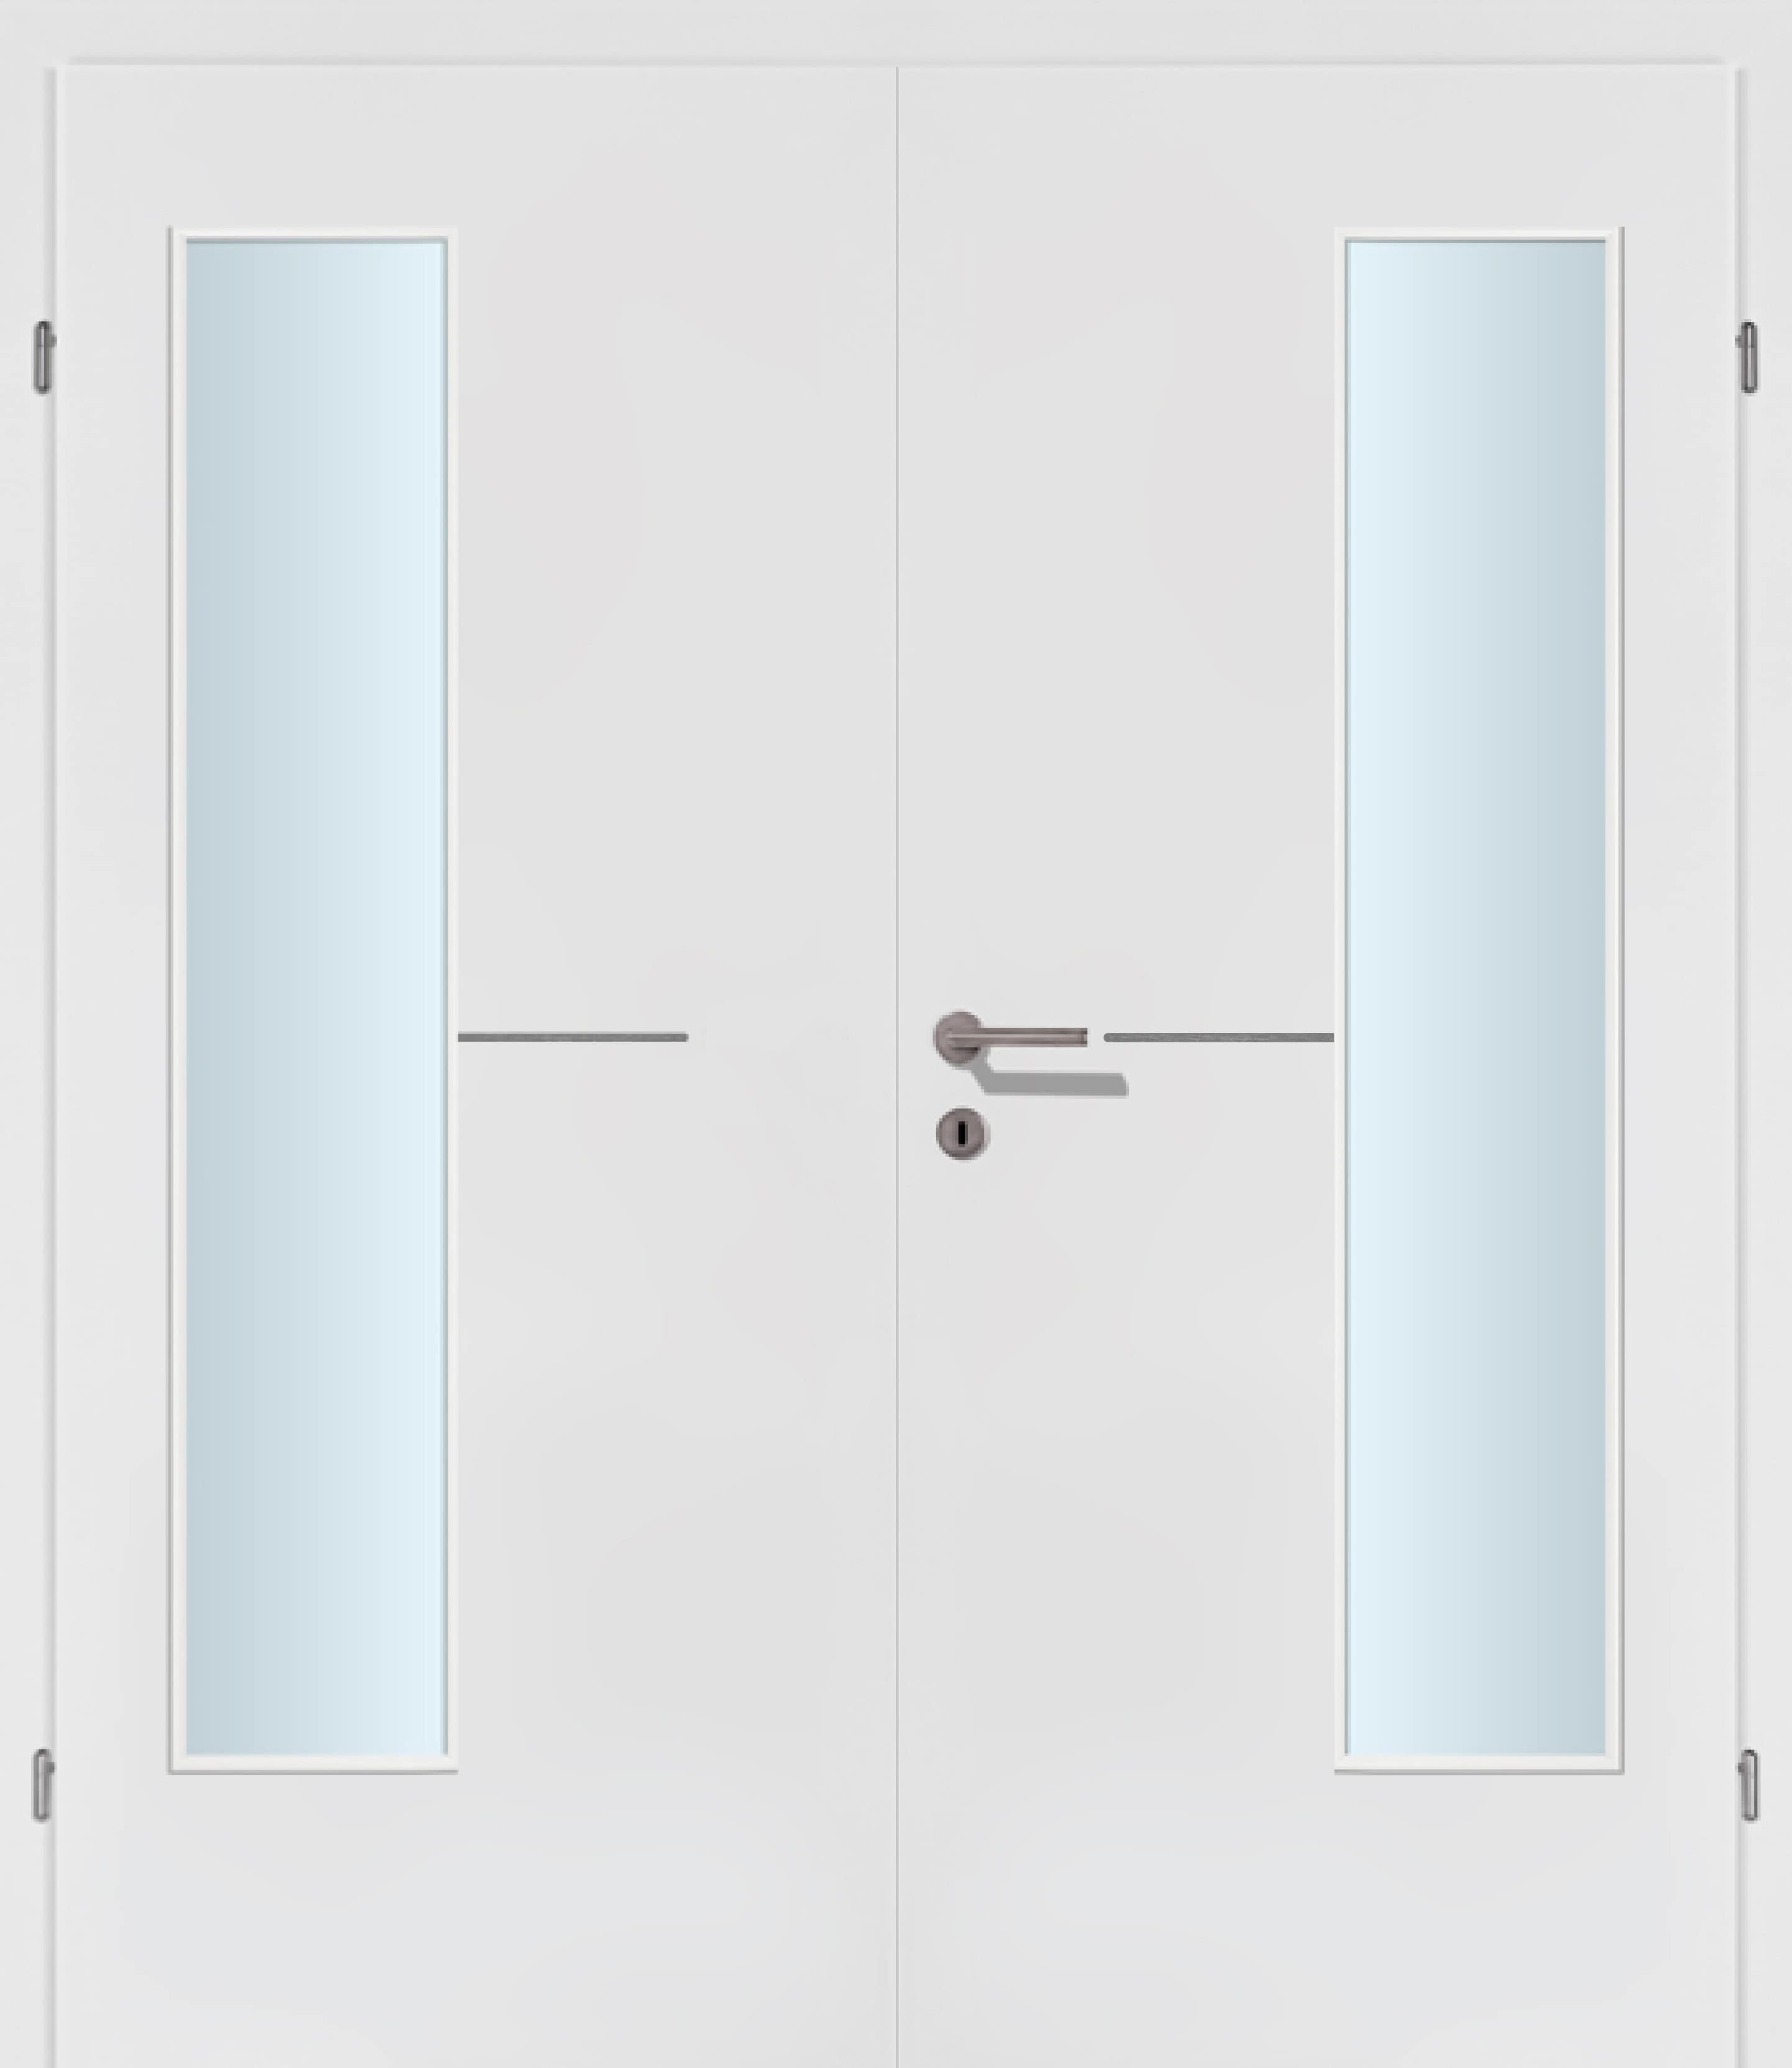 Selektion T47 Alu Effekt Lisenen weiss Innentür Inkl. Zarge (Türrahmen) Doppeltüre Inkl. Glaslichte EN Bandseitig